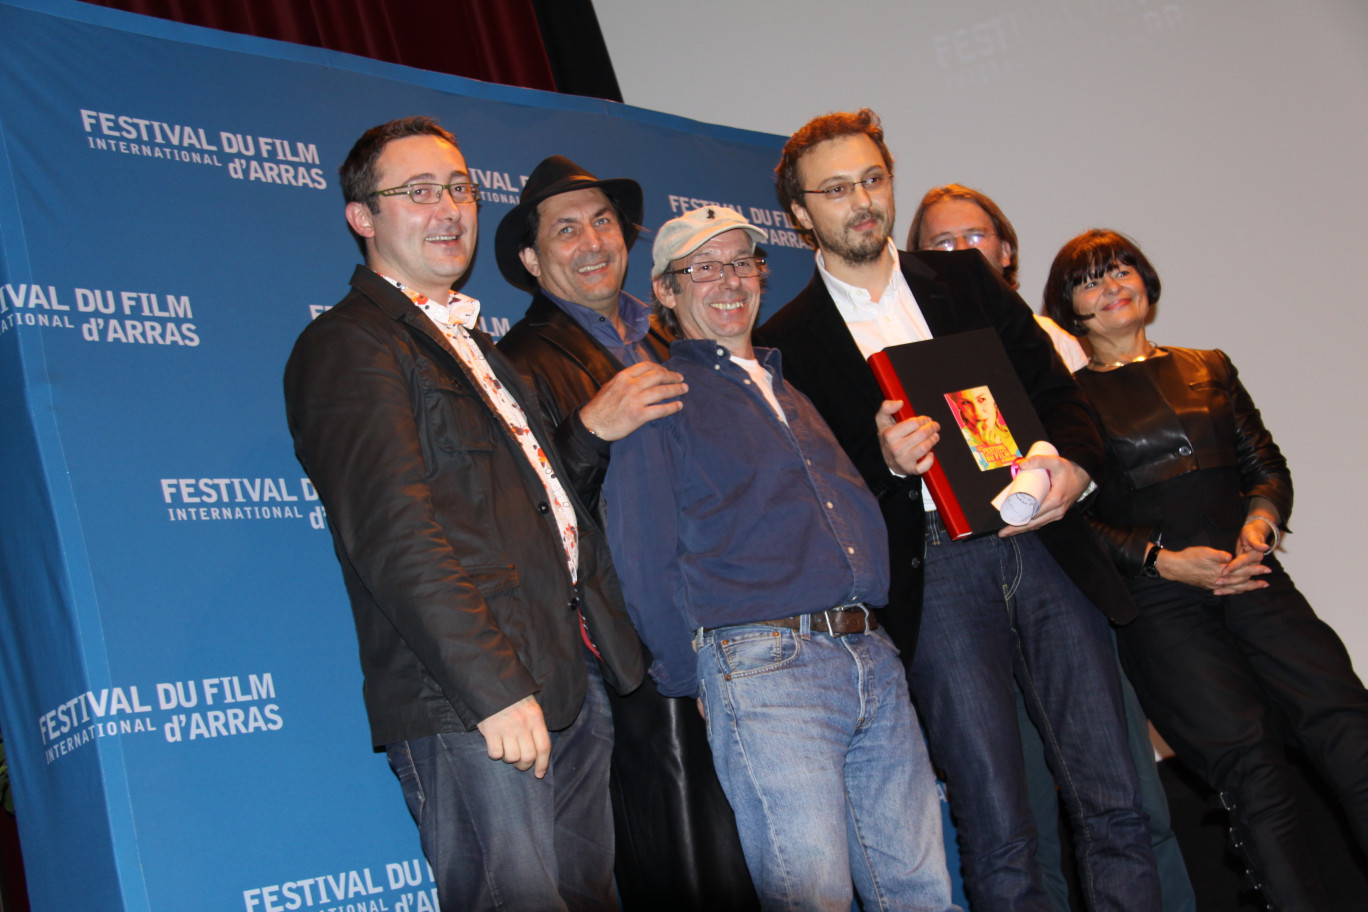 Au 11ème Arras Film Festival en 2010, lors de la remise de l’Atlas d’Argent, de gauche à droite : Tudor Giurgiu, Serge Riaboukine, Manuel Poirier (président du jury), Calin Peter Netzer, Hrvoje Hribar et Catherine Génisson, vice-présidente du Conseil Régional Nord-Pas de Calais.